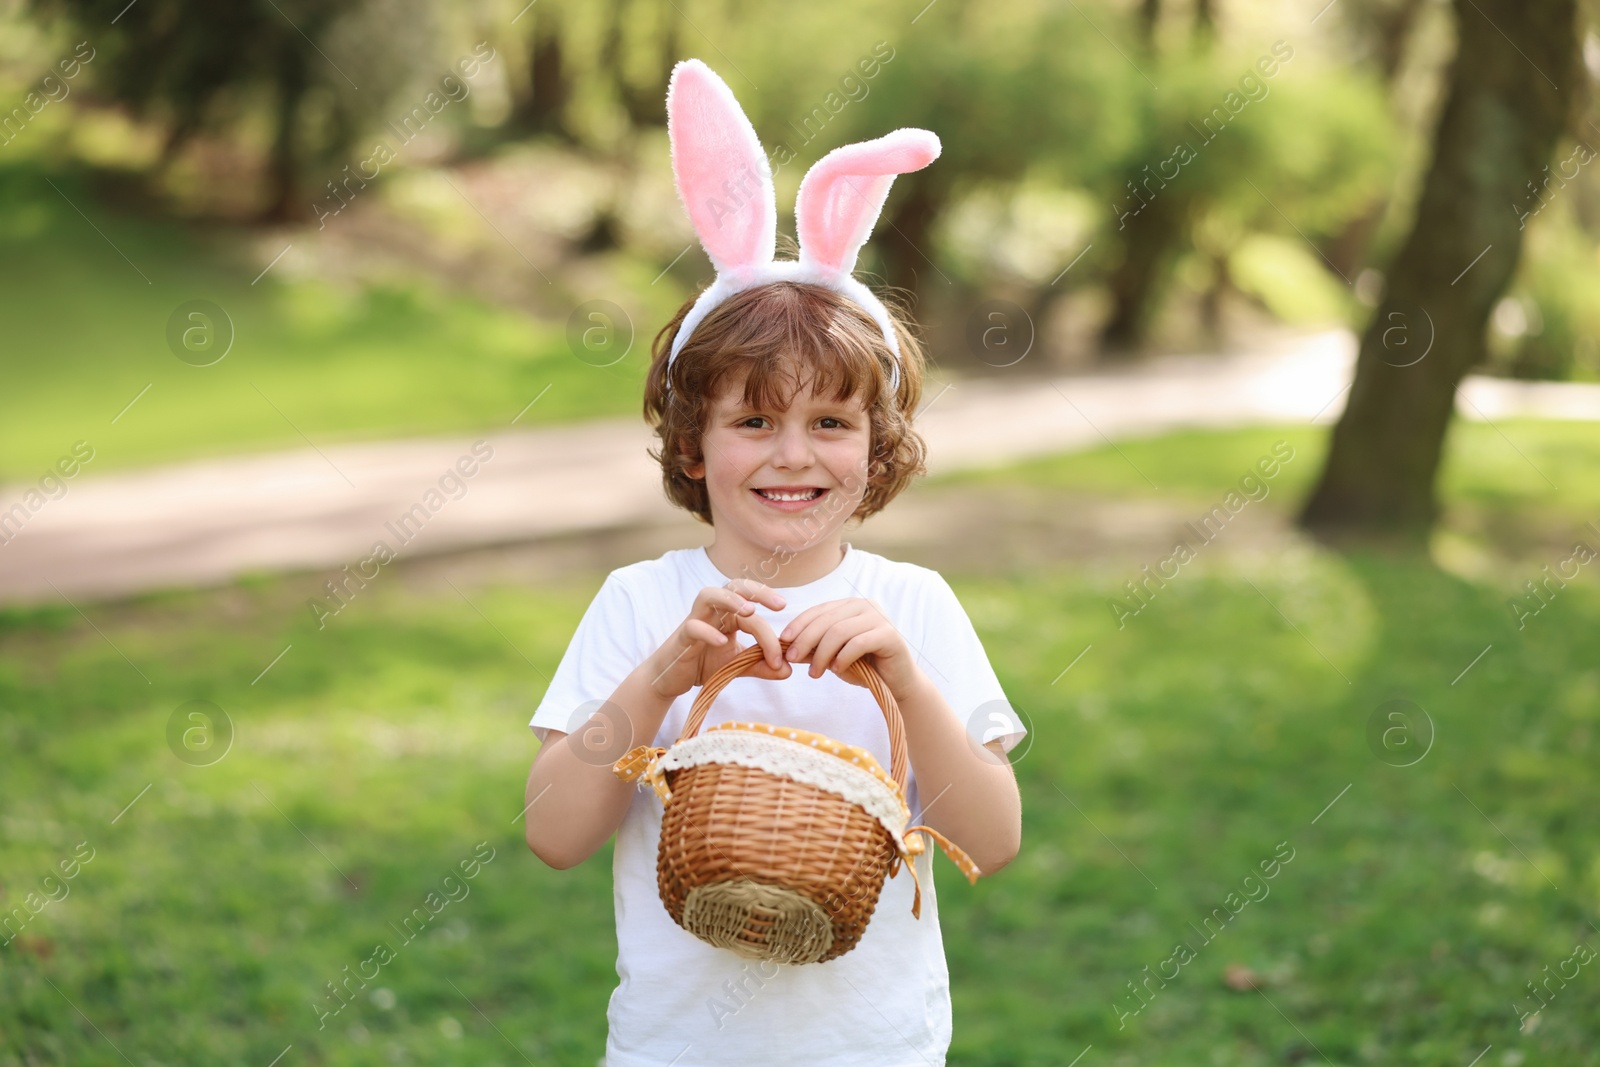 Photo of Easter celebration. Cute little boy in bunny ears holding wicker basket outdoors